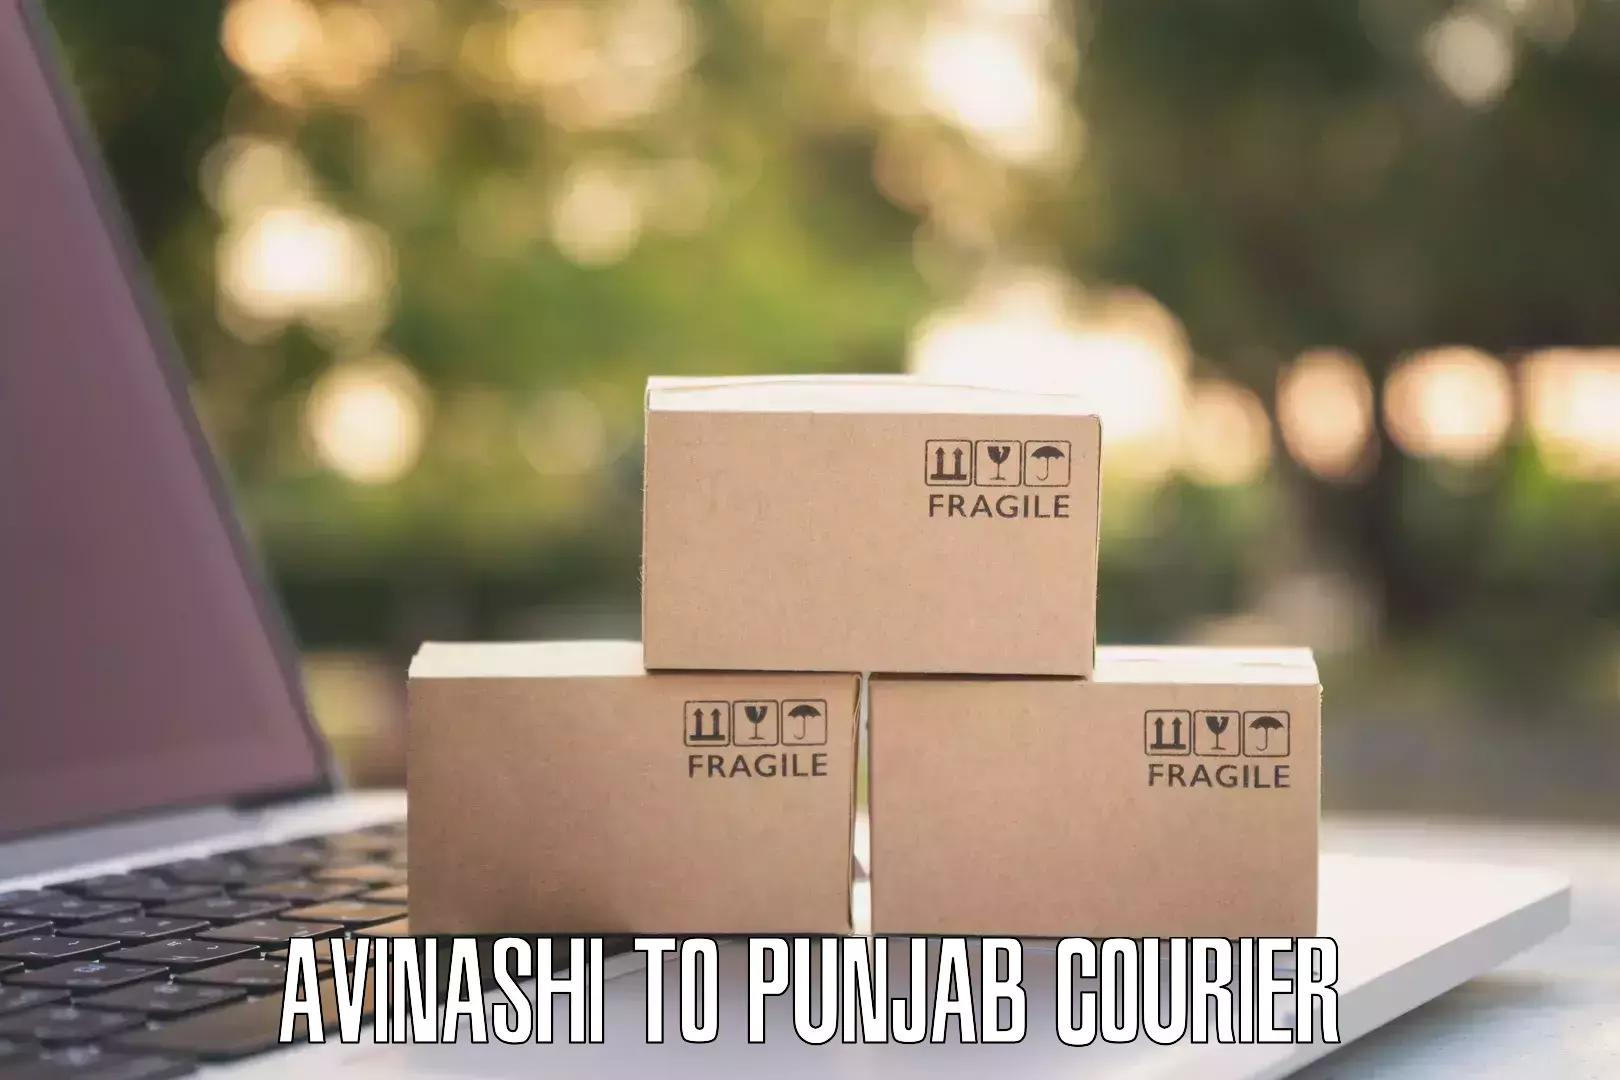 Cash on delivery service Avinashi to Jalandhar